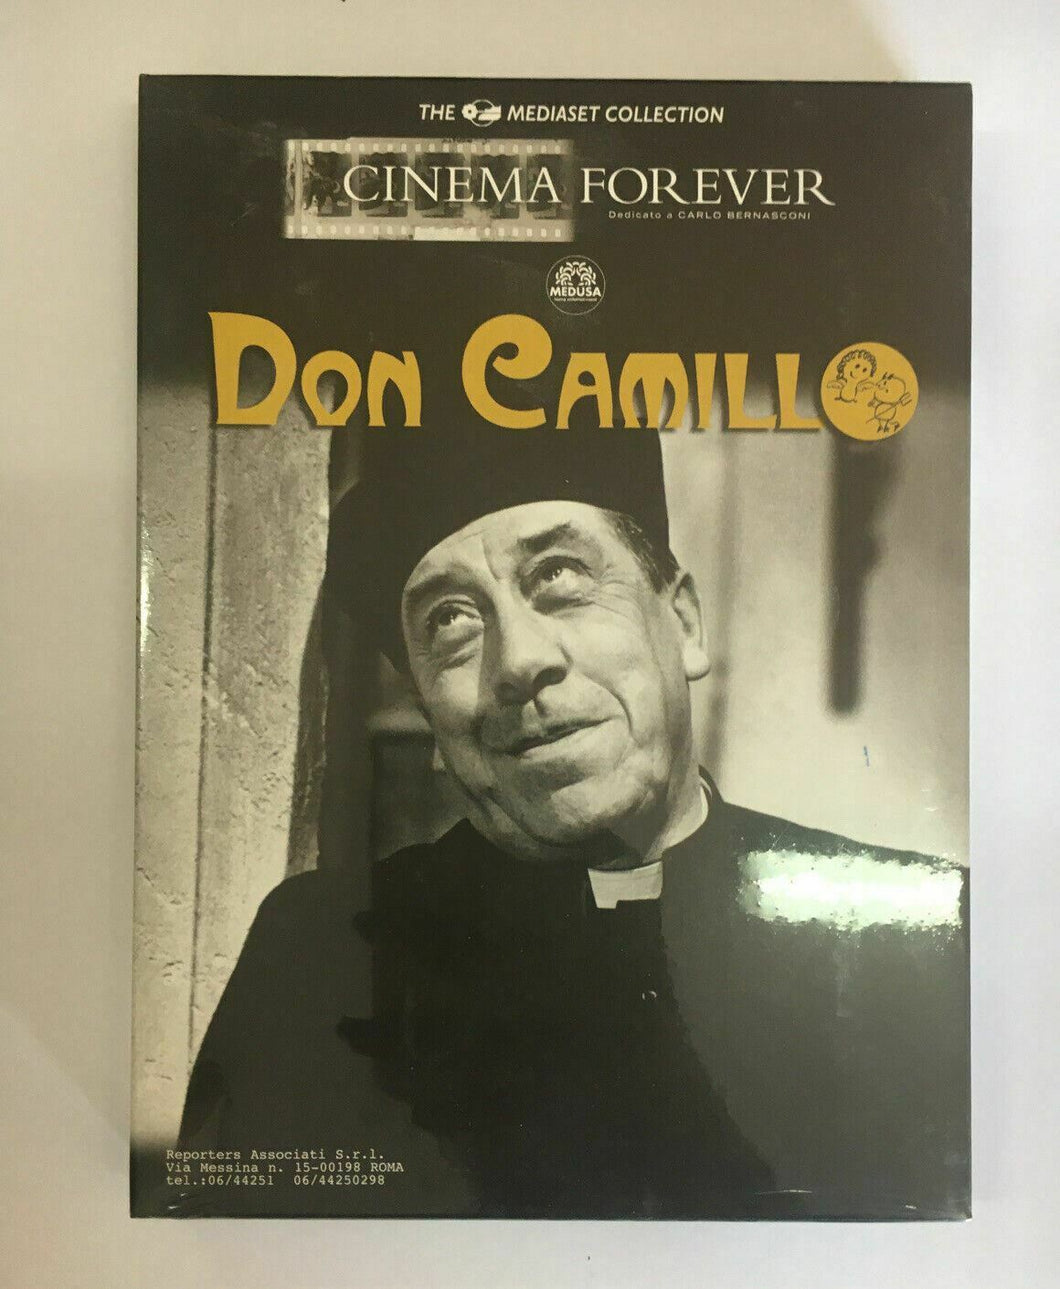 DON CAMILLO DVD Nuovo Mediaset Collection